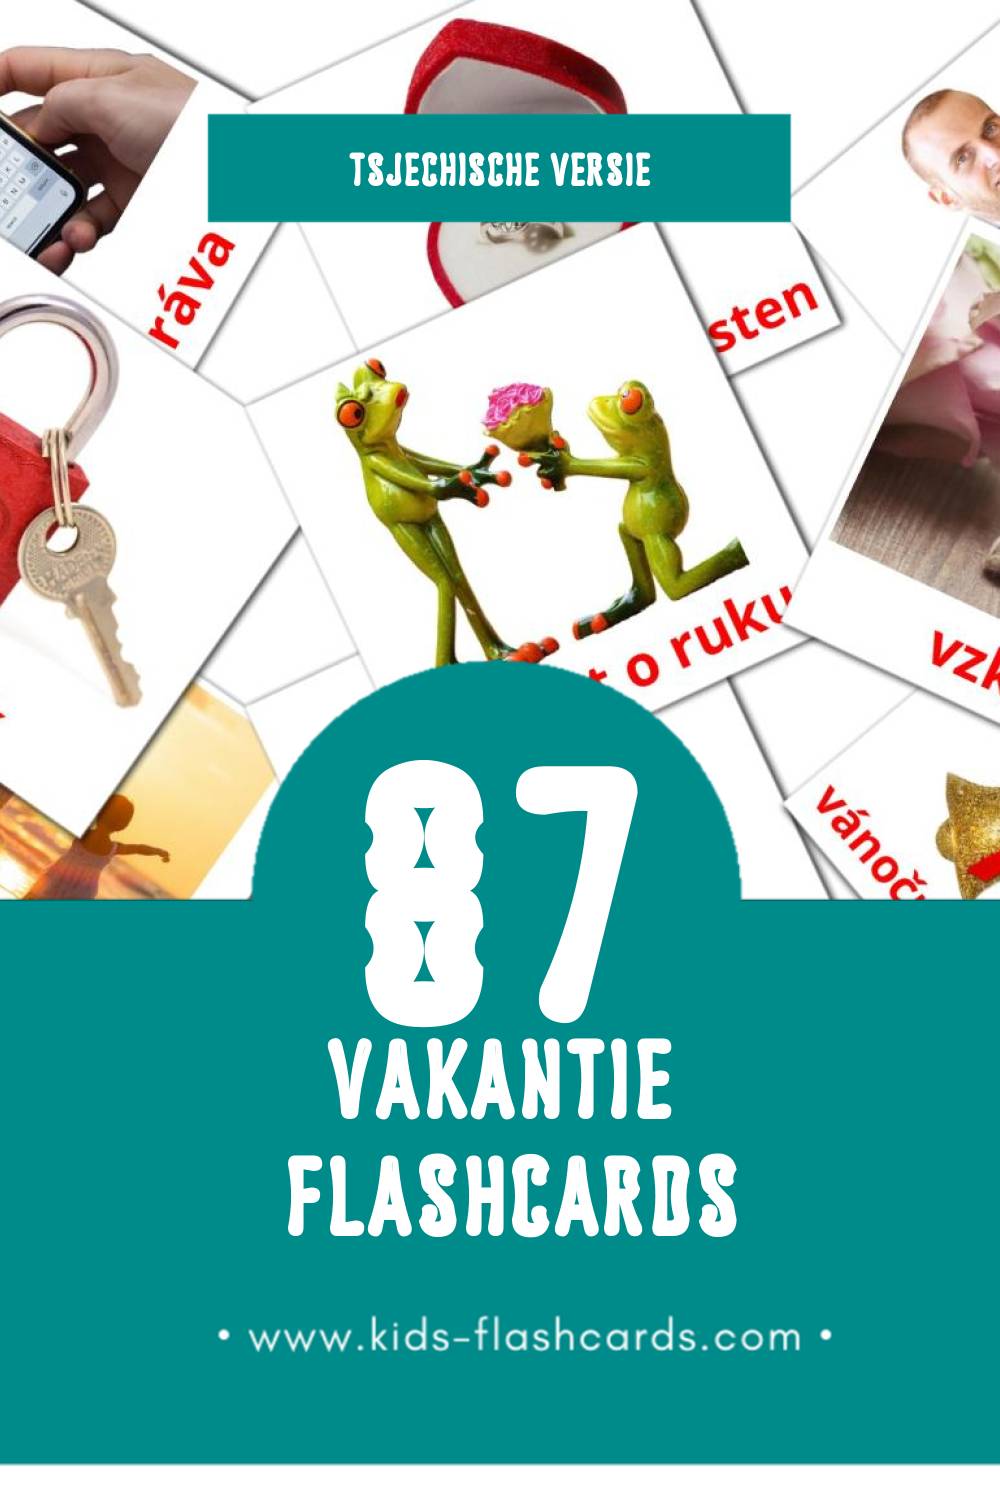 Visuele Svátky Flashcards voor Kleuters (87 kaarten in het Tsjechisch)